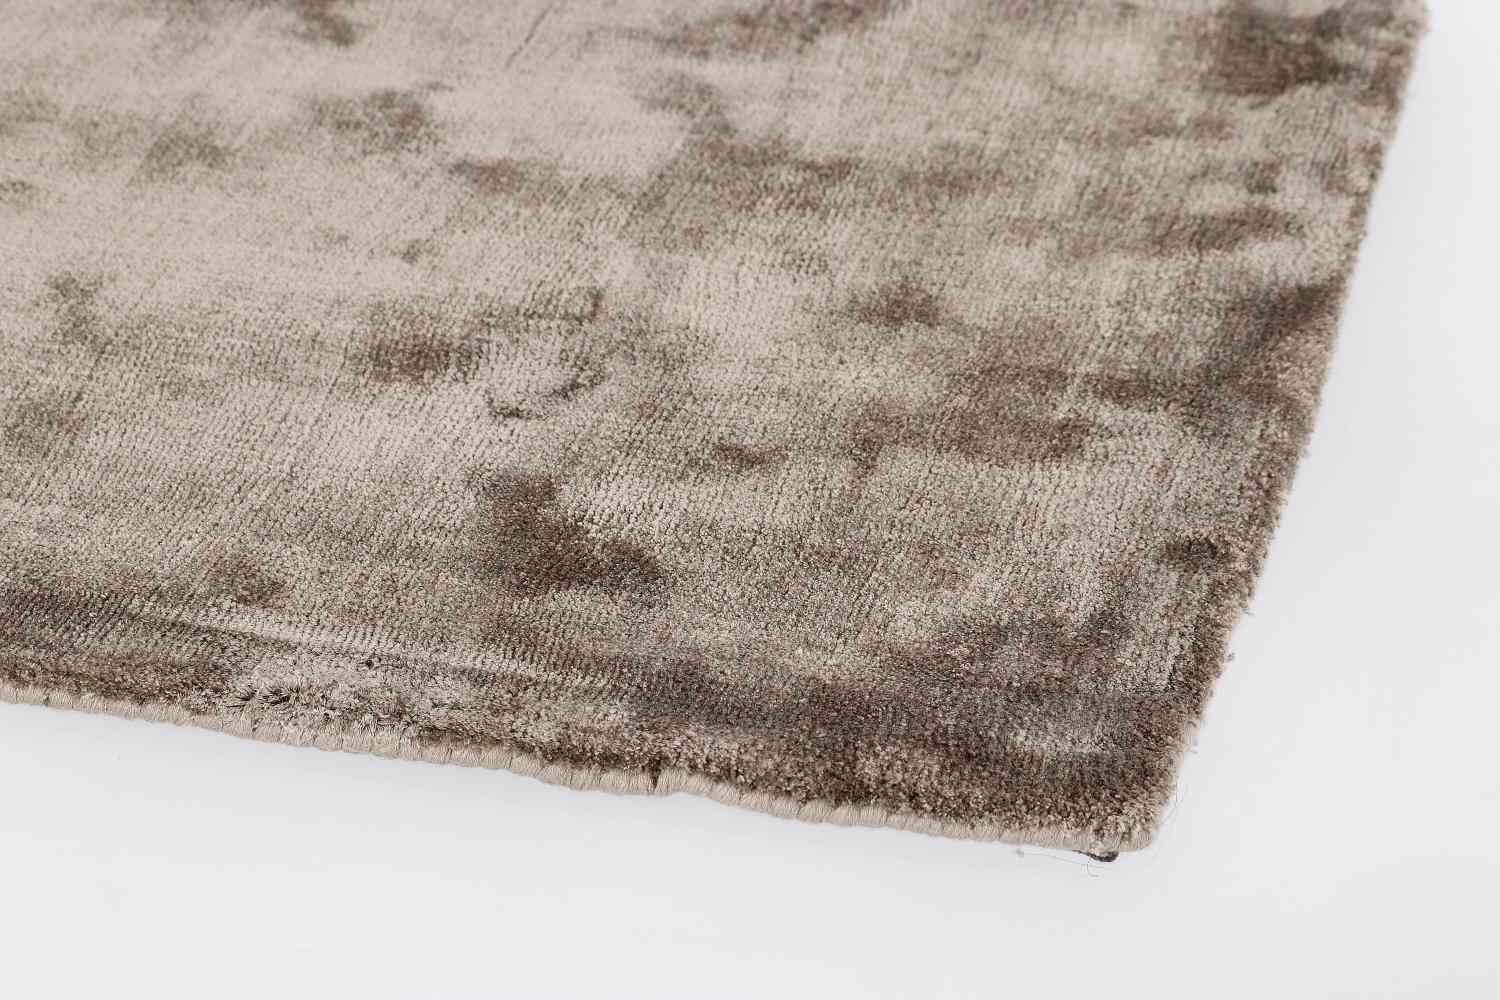 Der Teppich Samadhi überzeugt mit seinem modernen Design. Gefertigt wurde die Vorderseite aus Viskose und die Rückseite ist aus Baumwolle. Der Teppich besitzt einen braunen Farbton und die Maße von 160x230 cm.